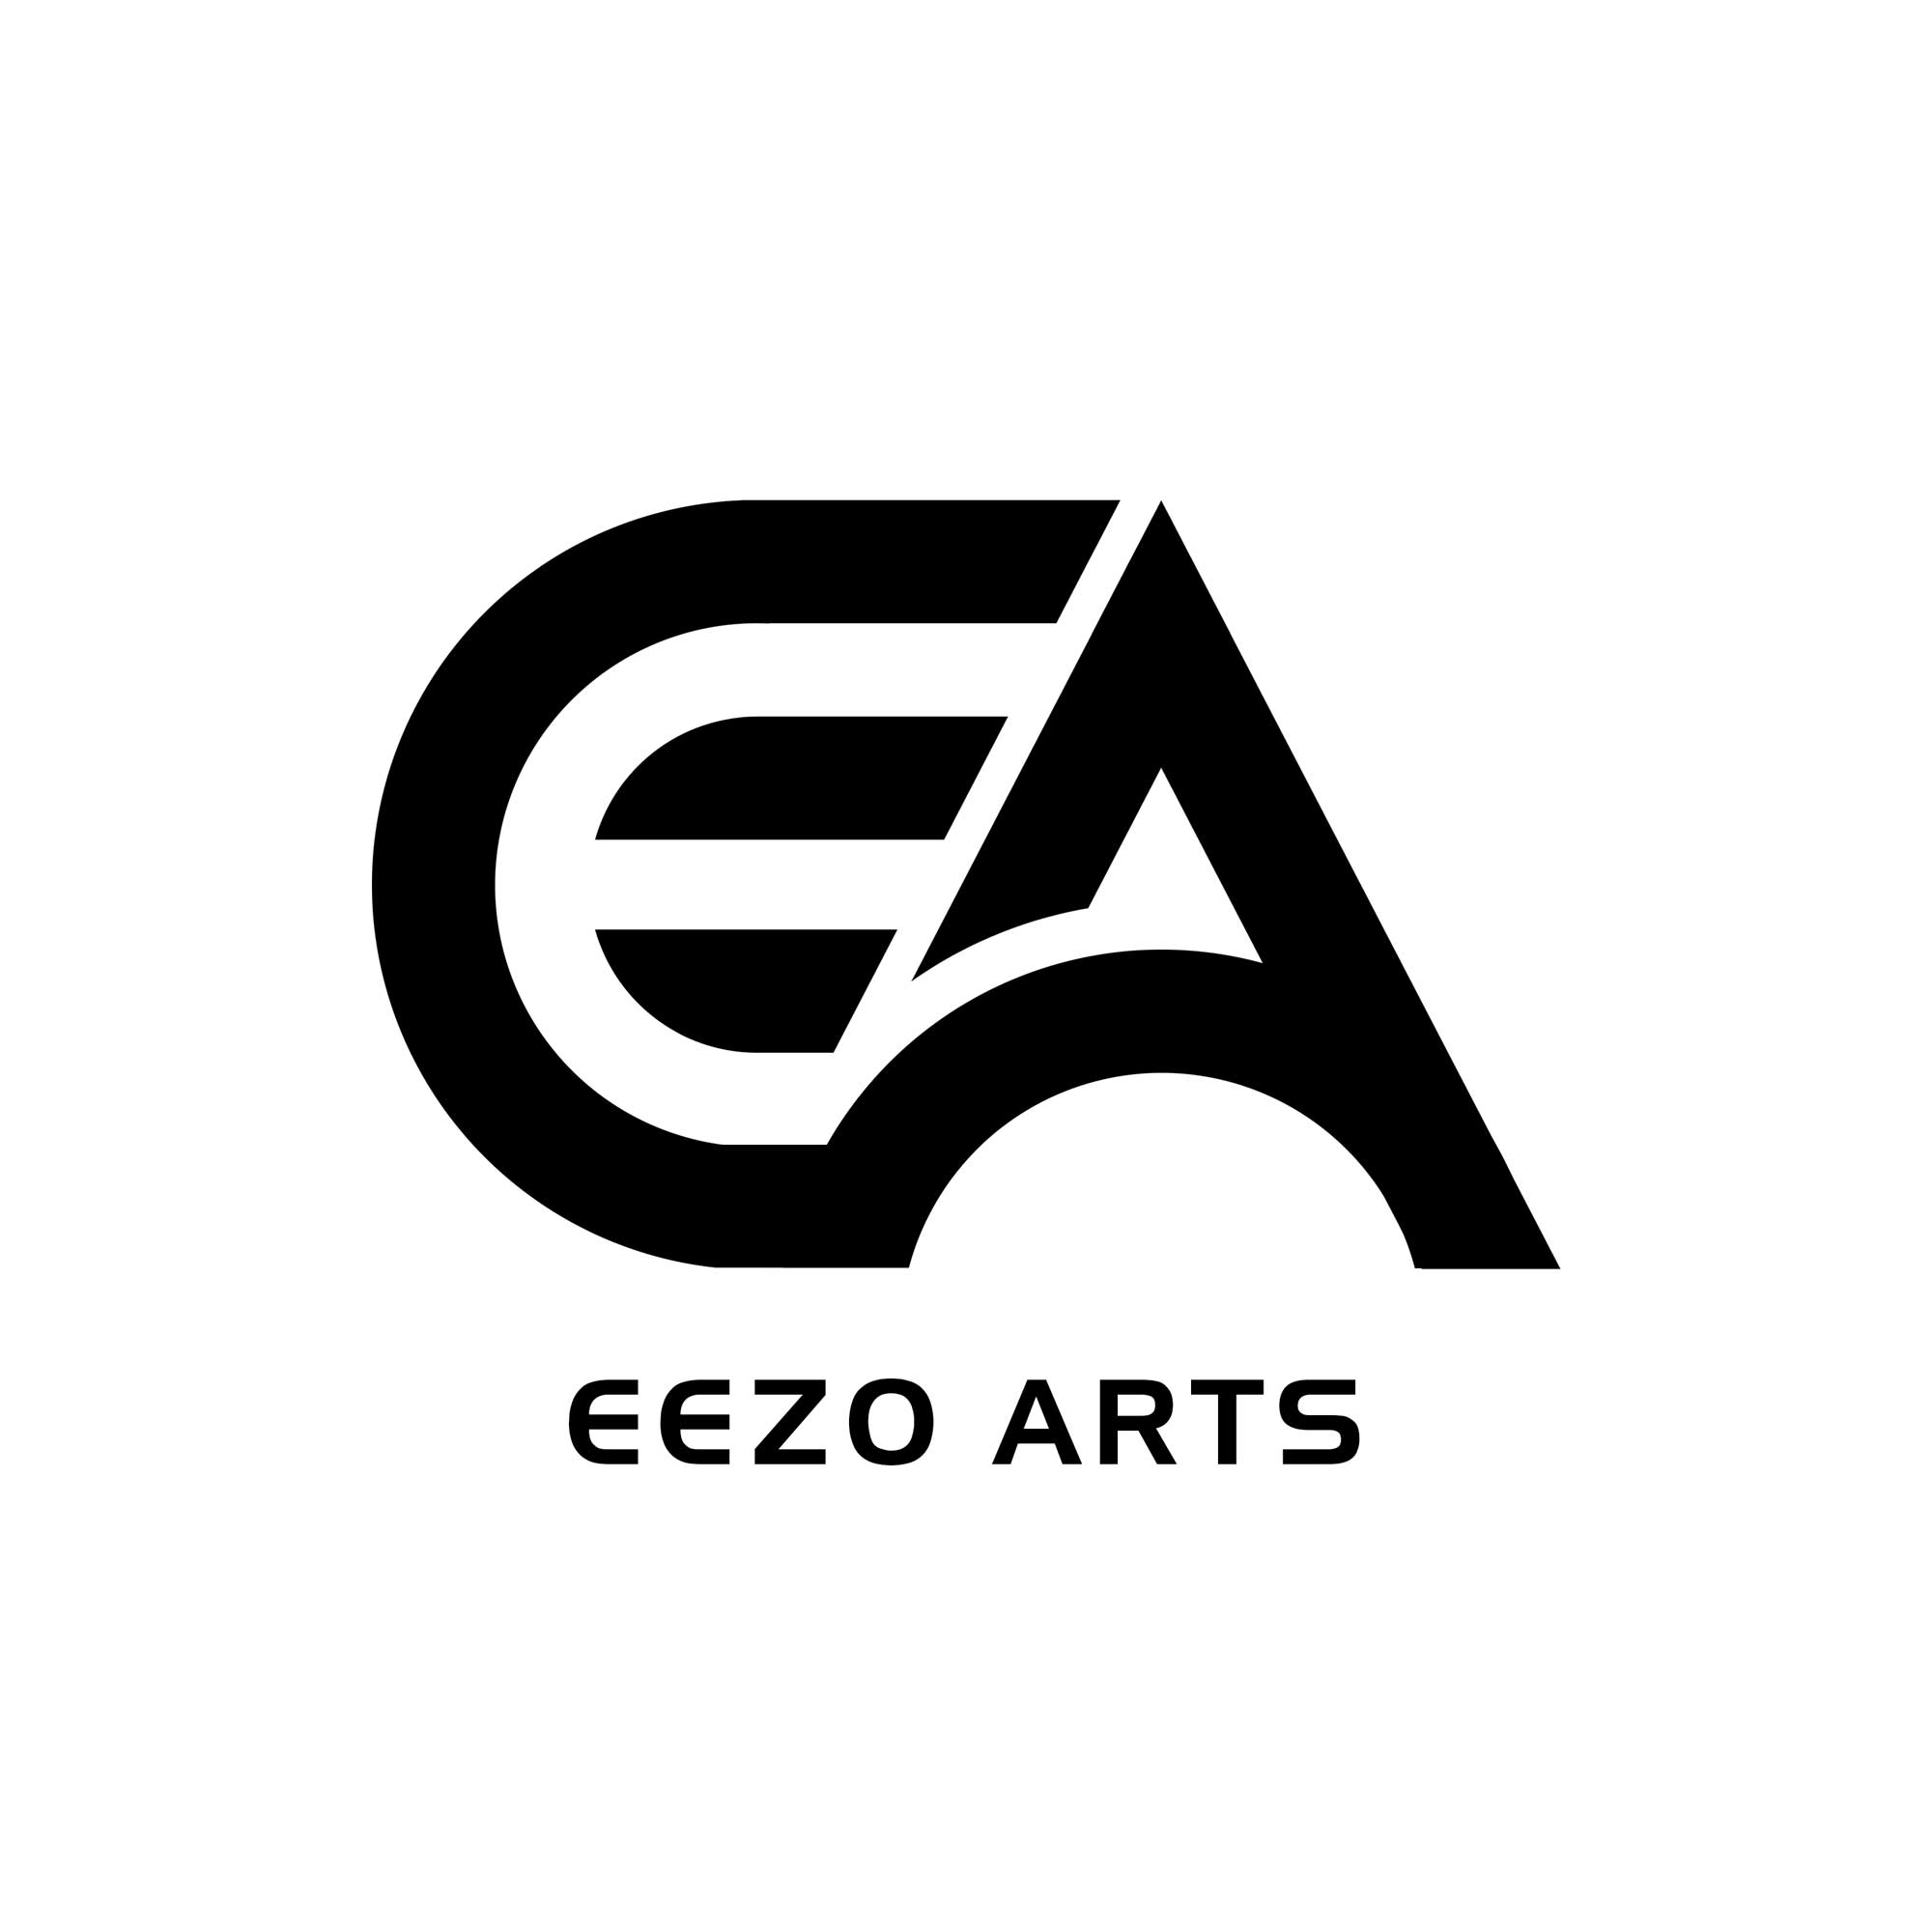 Eezo Arts